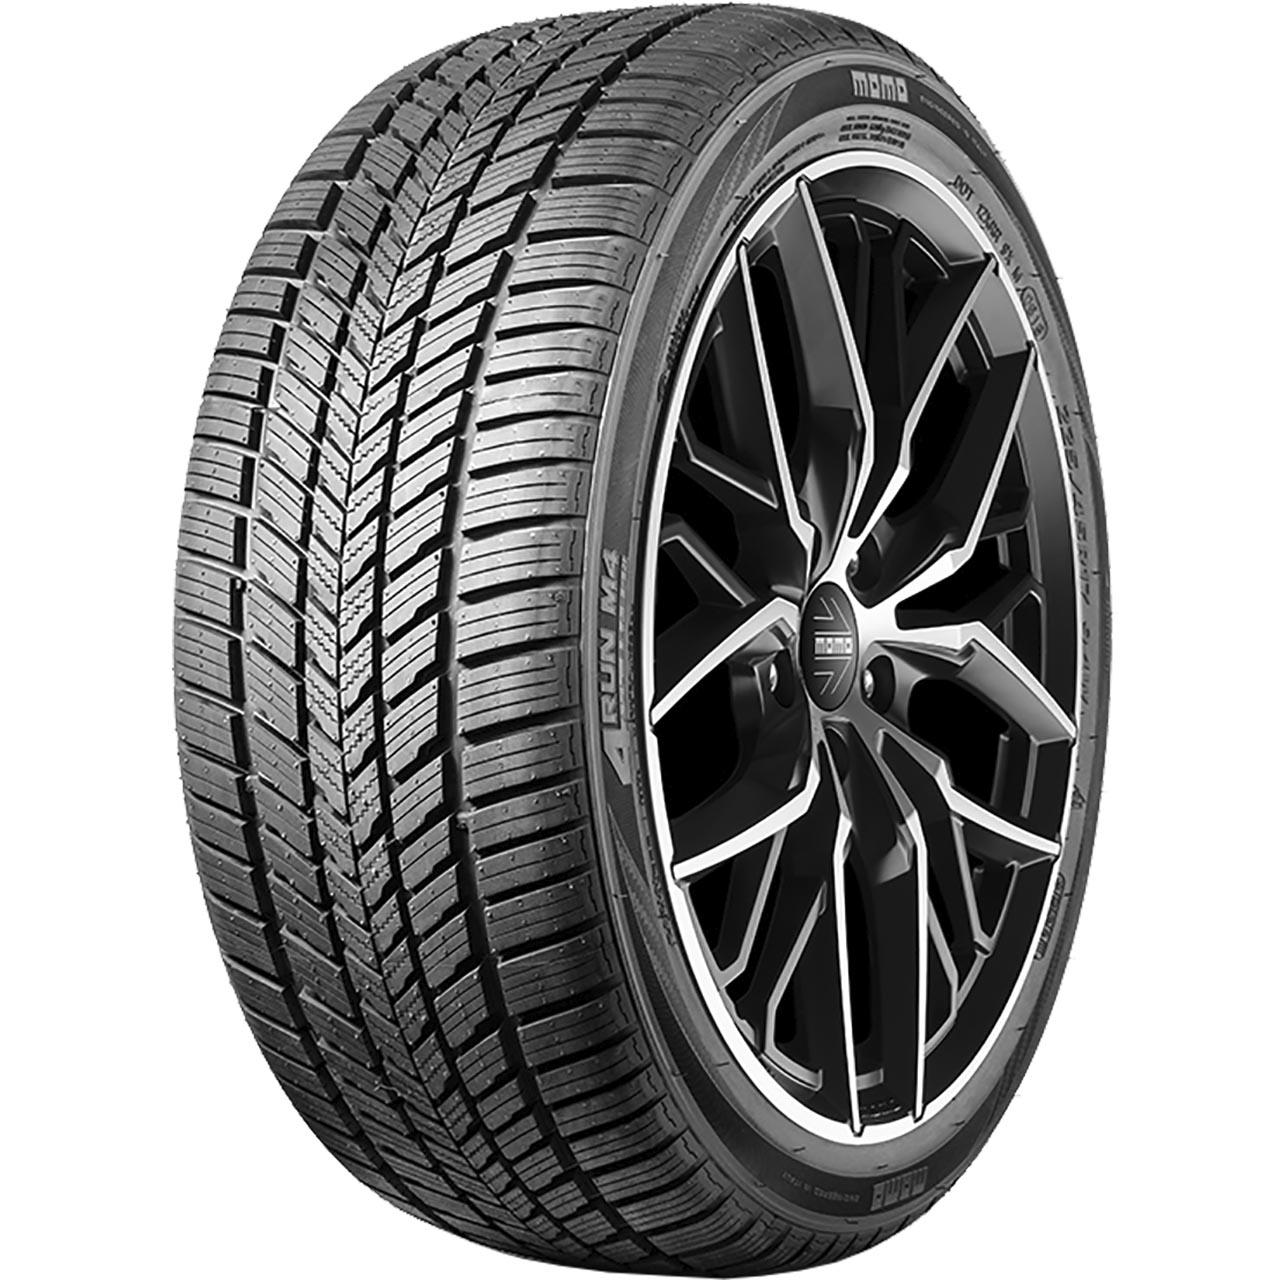 Momo Tire M 4 Four Season 215/65R17 103V XL